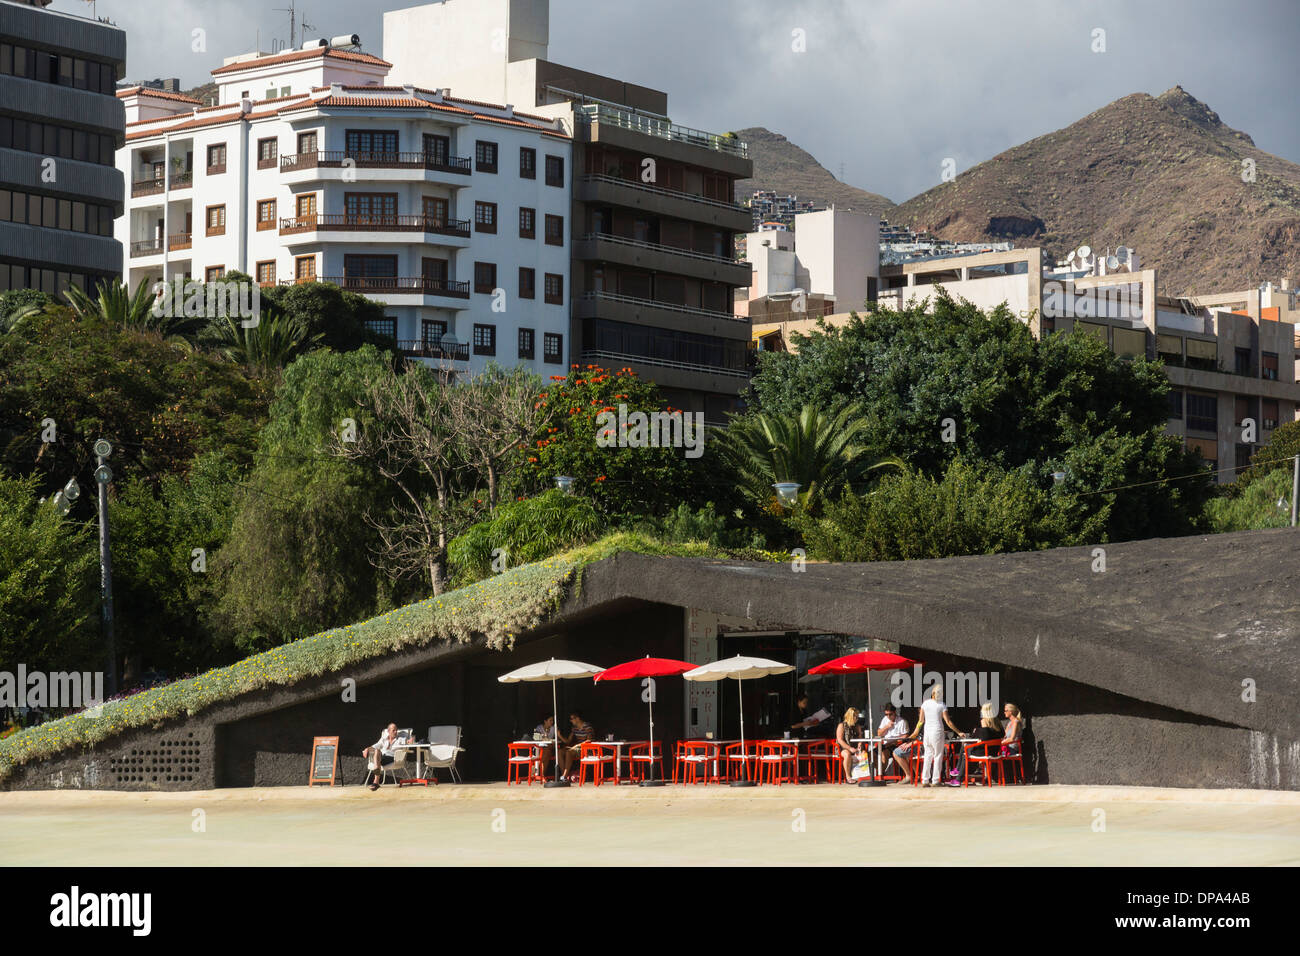 Tenerife, Îles Canaries - Santa Cruz. Grotte de lave à côté du café de style (vide) Lac de la Plaza de España. Banque D'Images